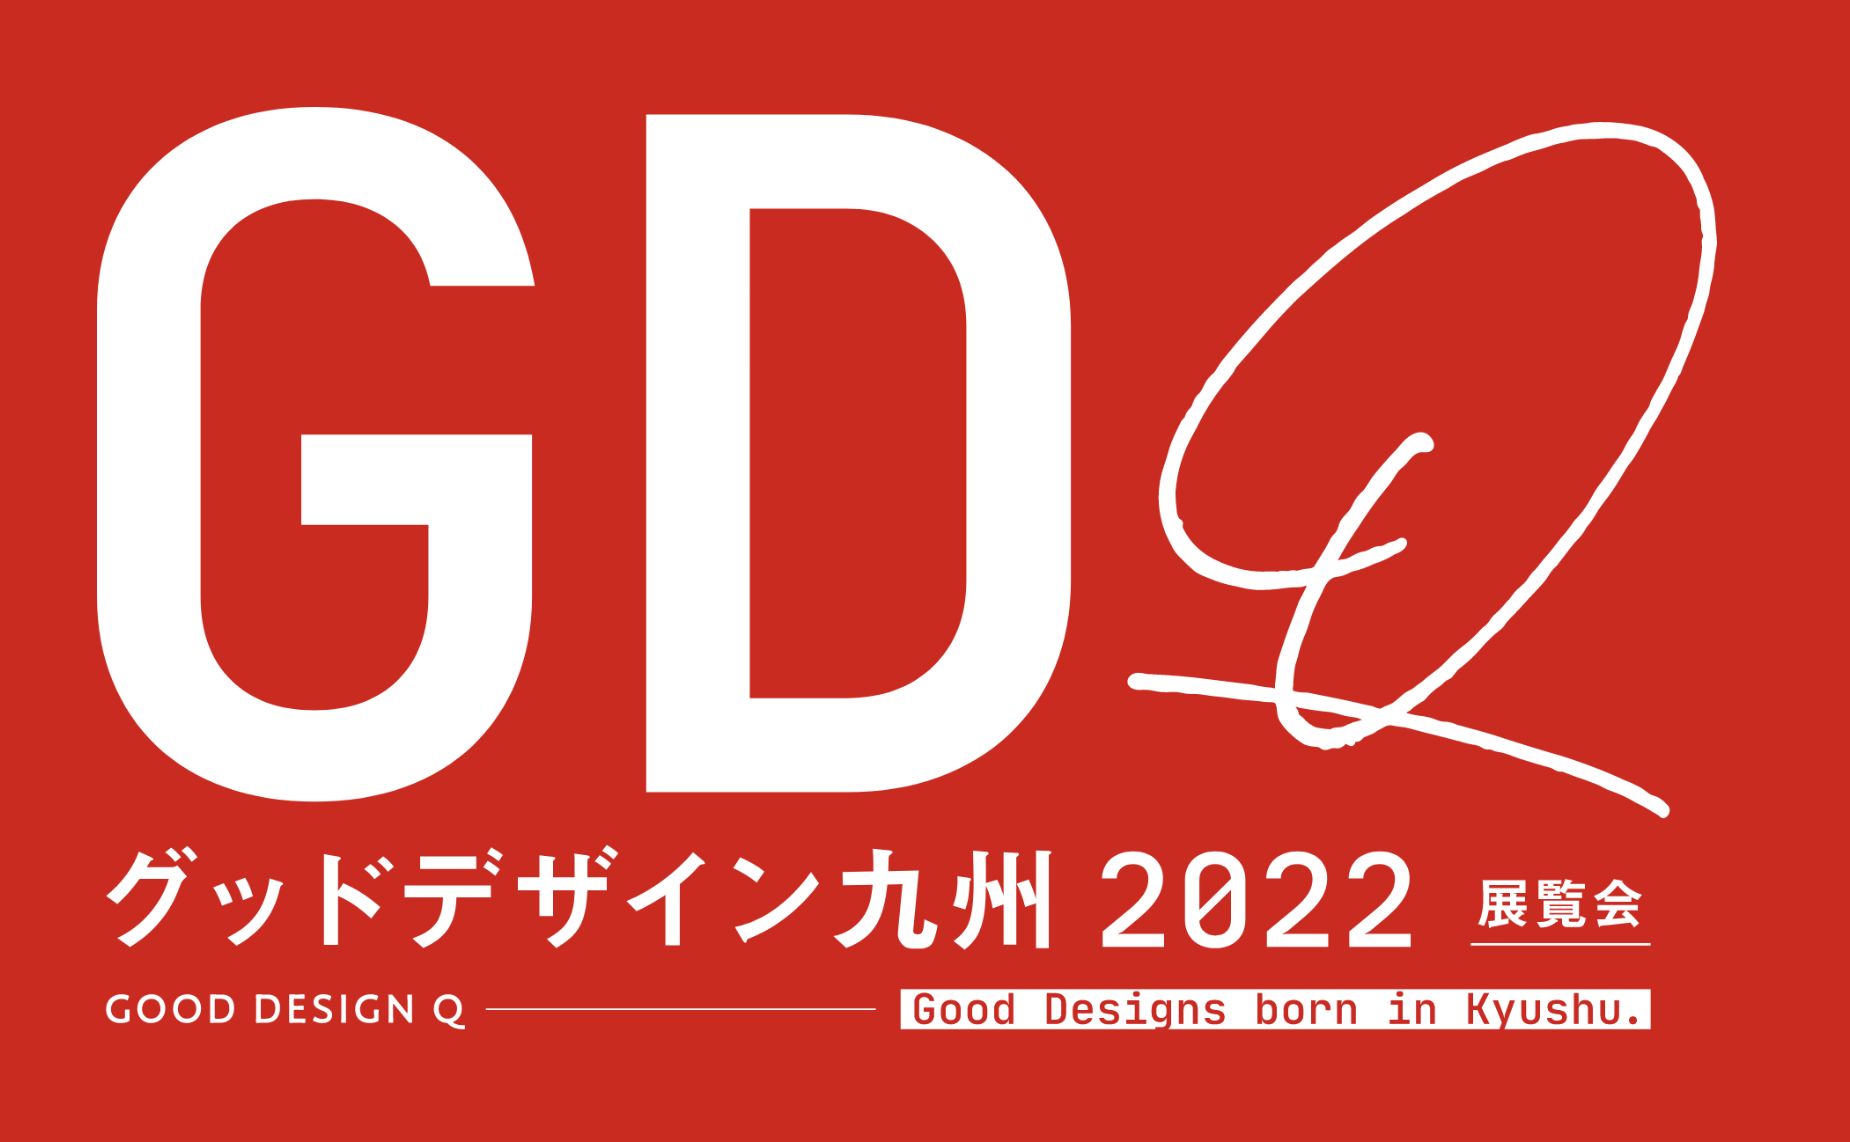 チャレンジブロック「株式会社 九銘協」峯 公一郎さんがグッドデザイン九州2022展覧会に出展されます